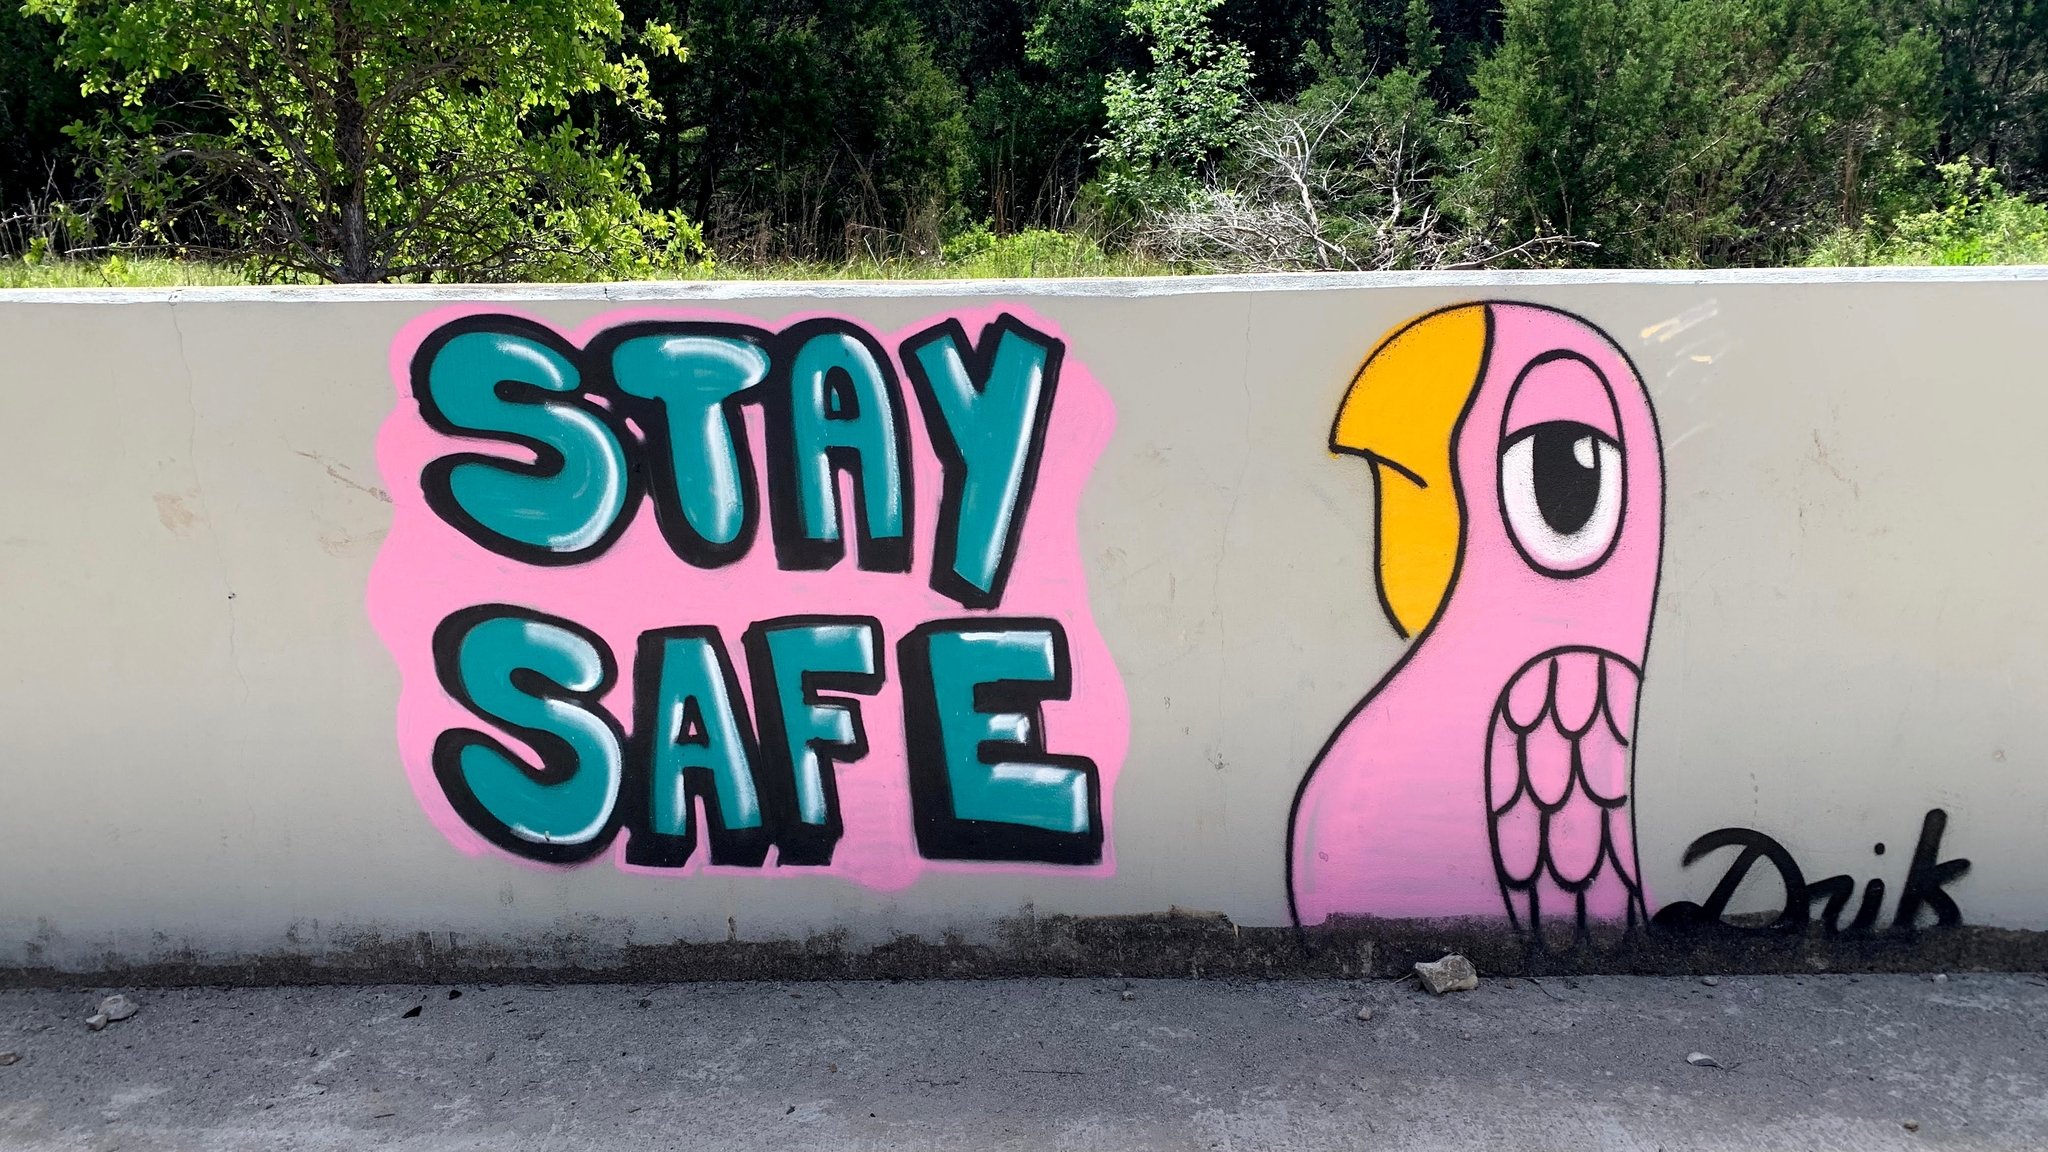 Stay Safe